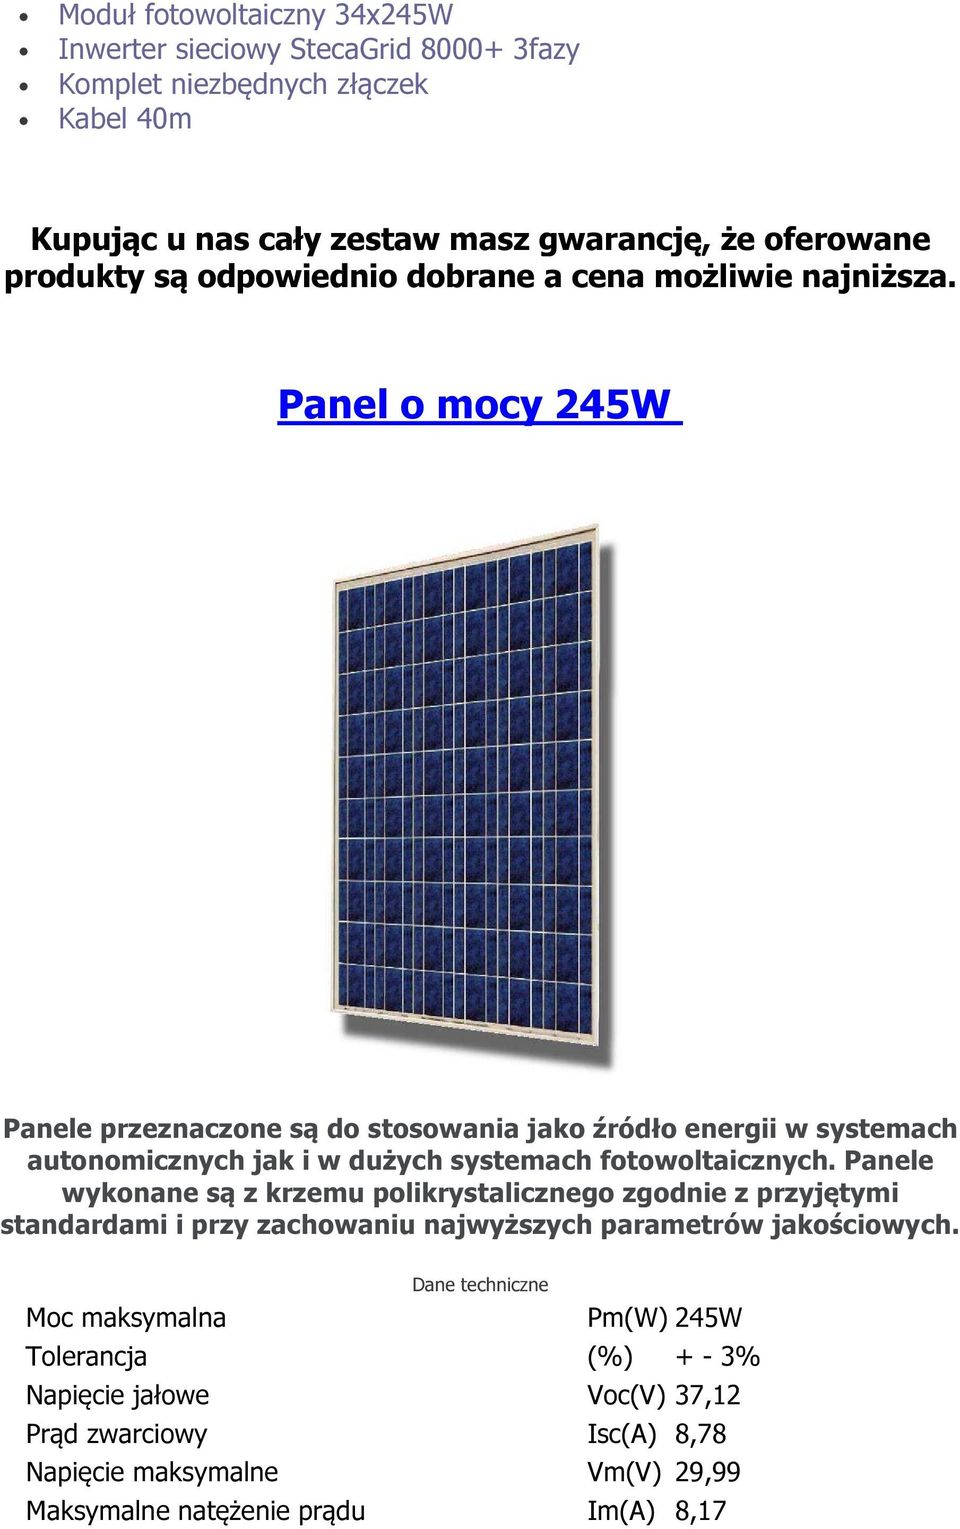 Panel mcy 245W Panele przeznaczne są d stswania jak źródł energii w systemach autnmicznych jak i w dużych systemach ftwltaicznych.